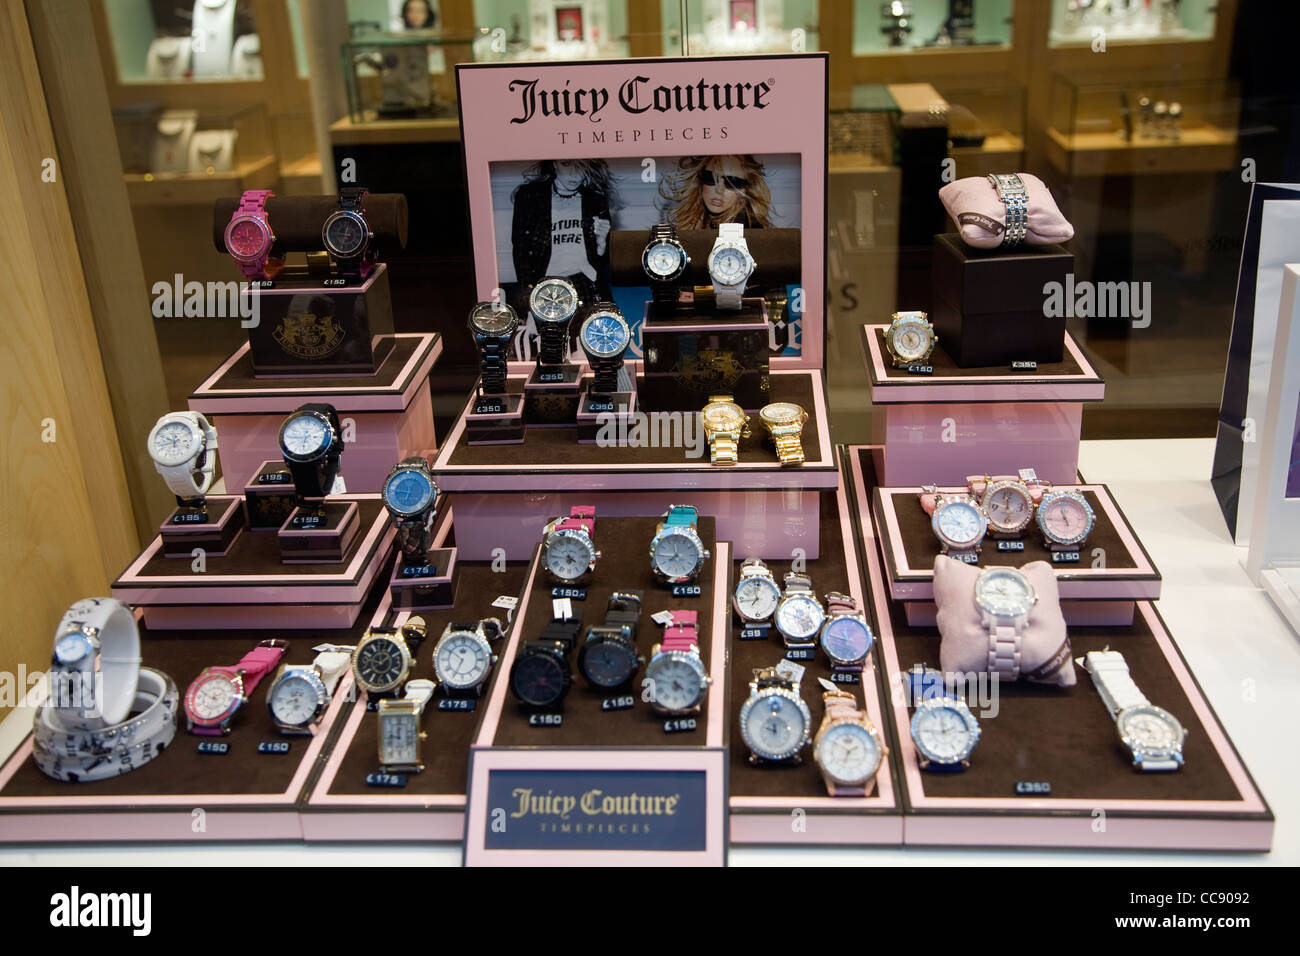 Juicy Couture Uhr Display Schaufenster Stockfotografie - Alamy